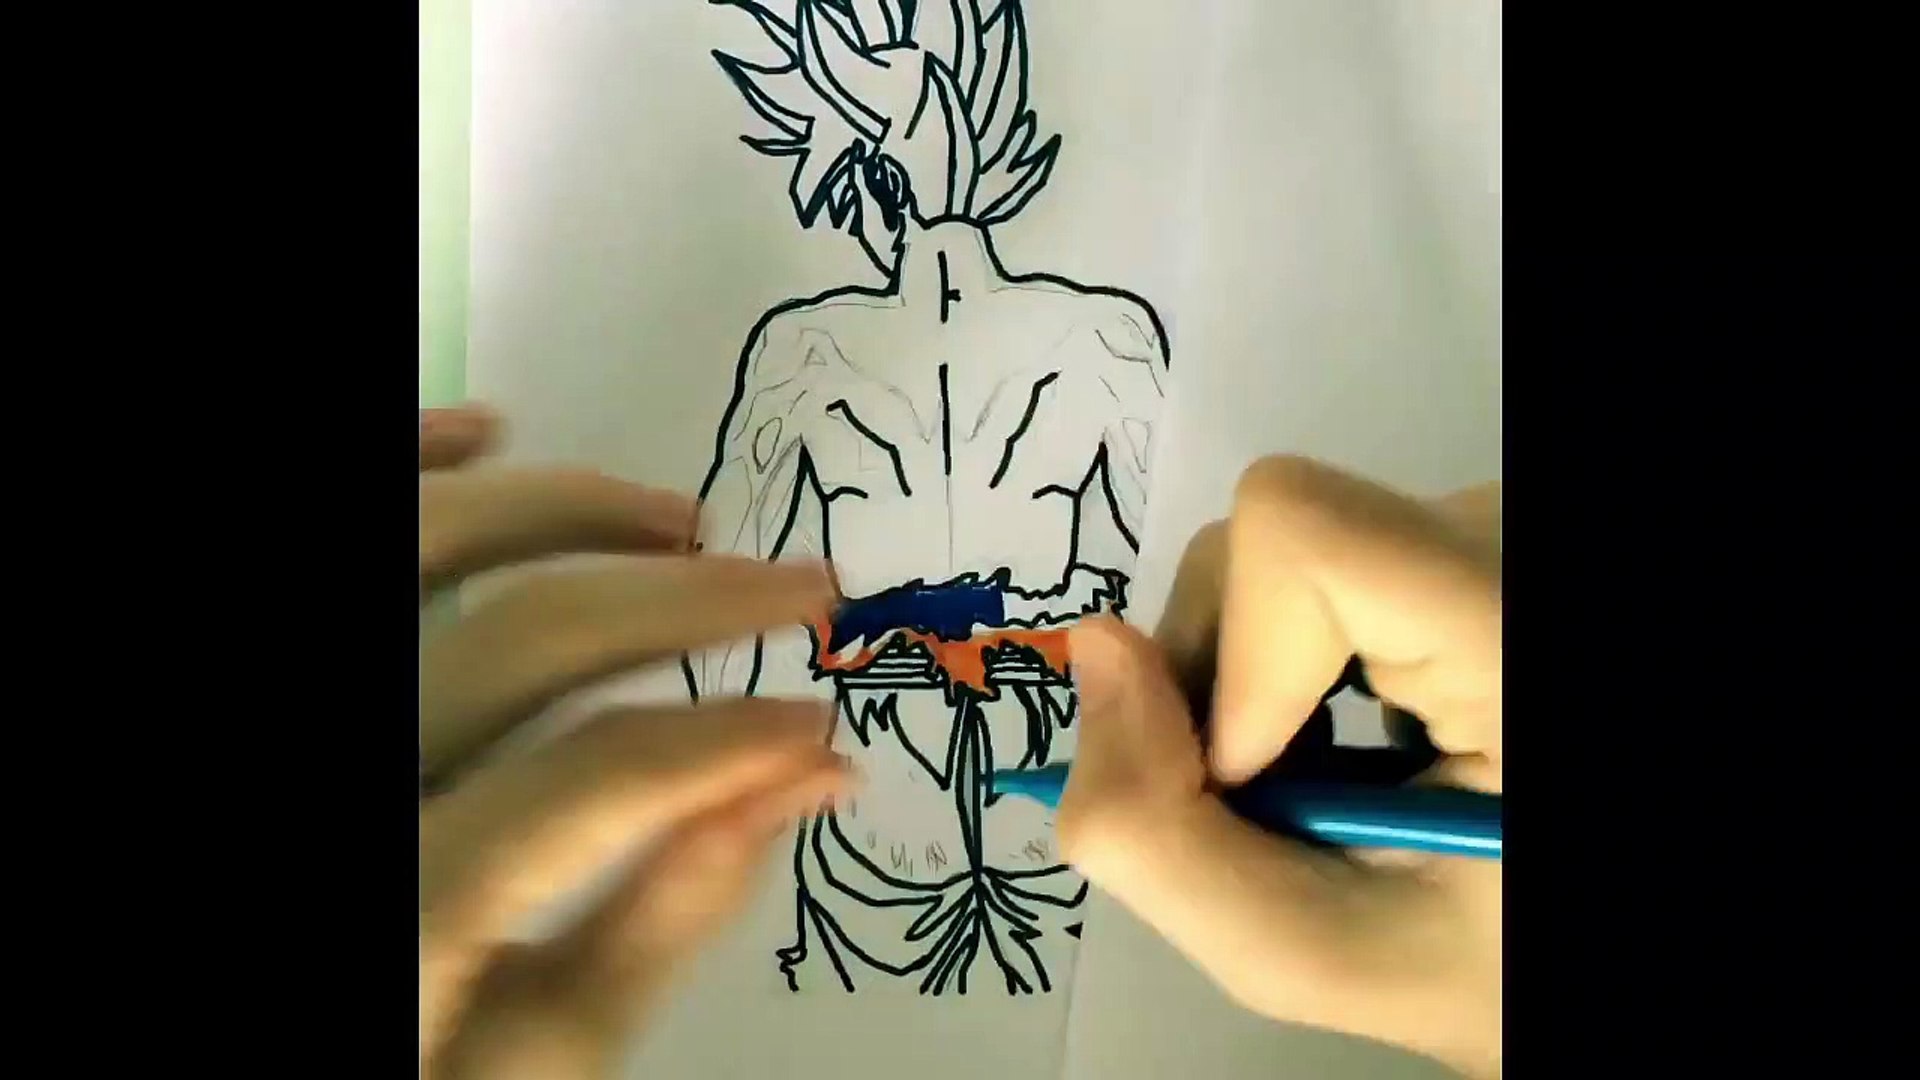 Desenhando o Goku no instinto superior - Vídeo Dailymotion